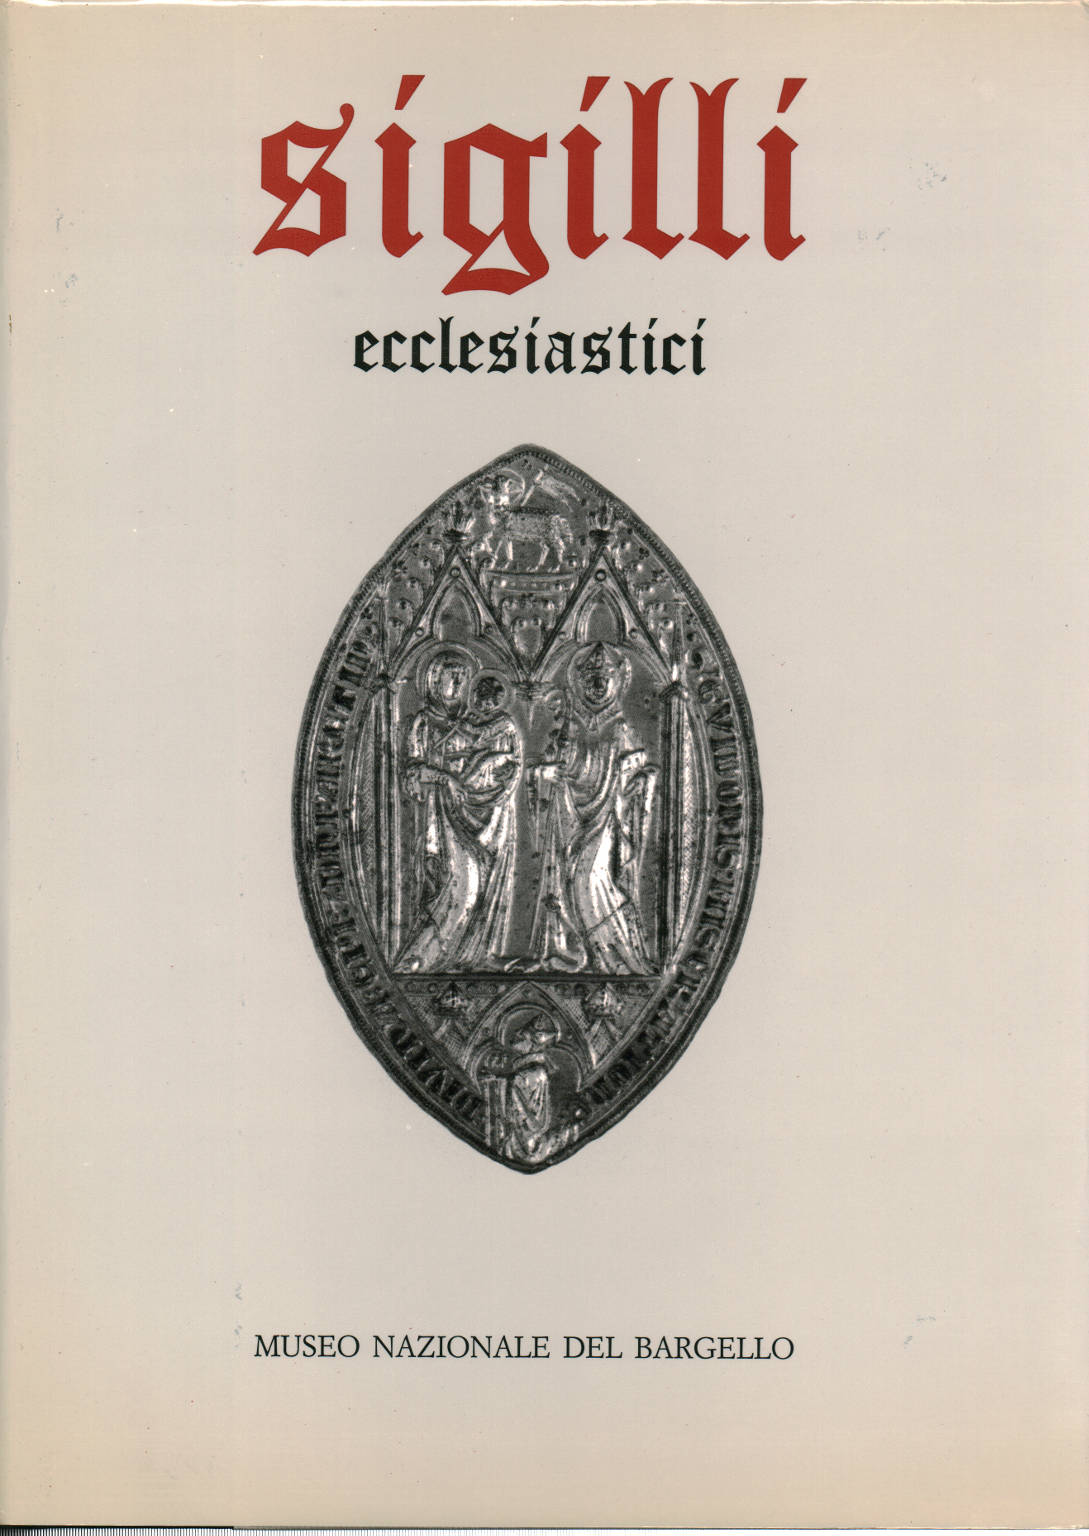 Sellos Eclesiásticos Volumen uno, Andrea Muzzi Bruna Tomasello Attilio Tori